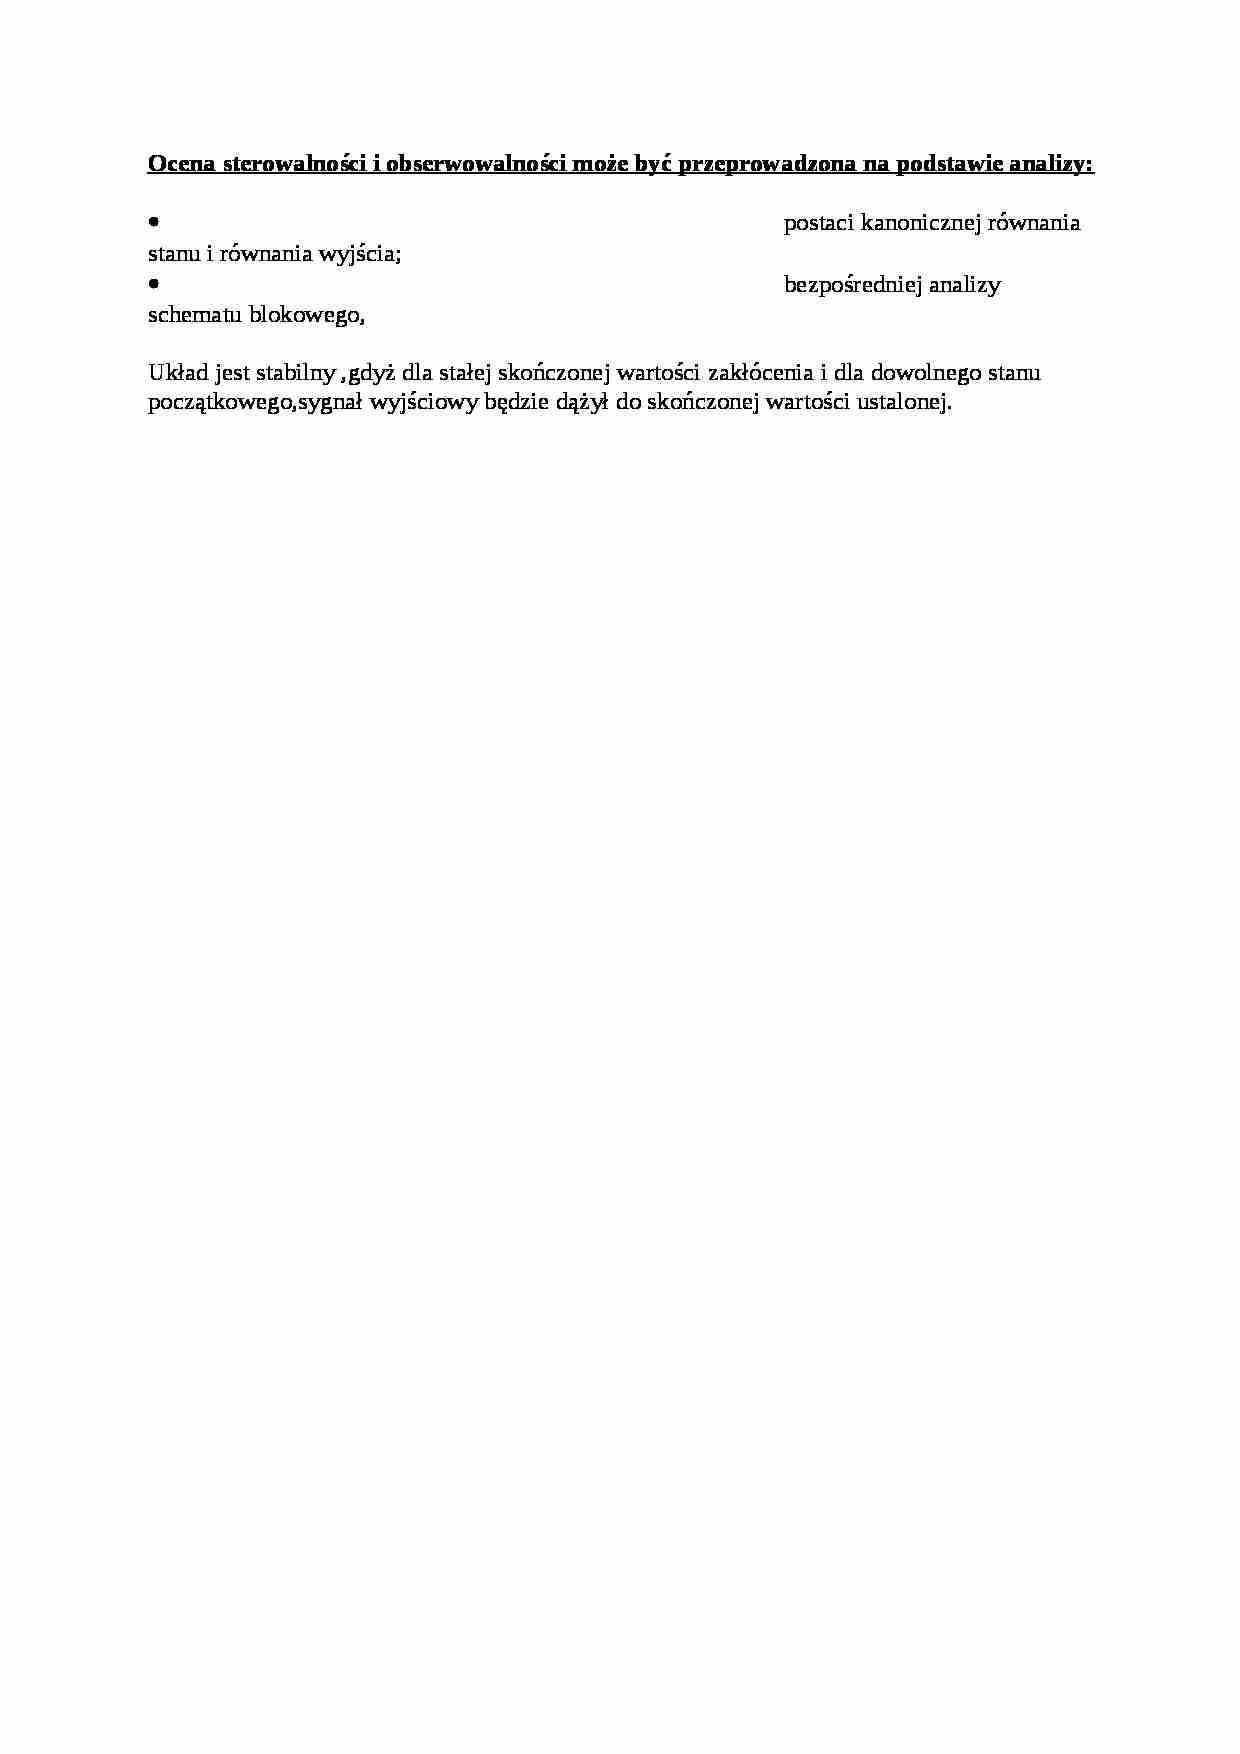 Ocena sterowalności i obserwowalności - wykład - Schemat blokowy - strona 1